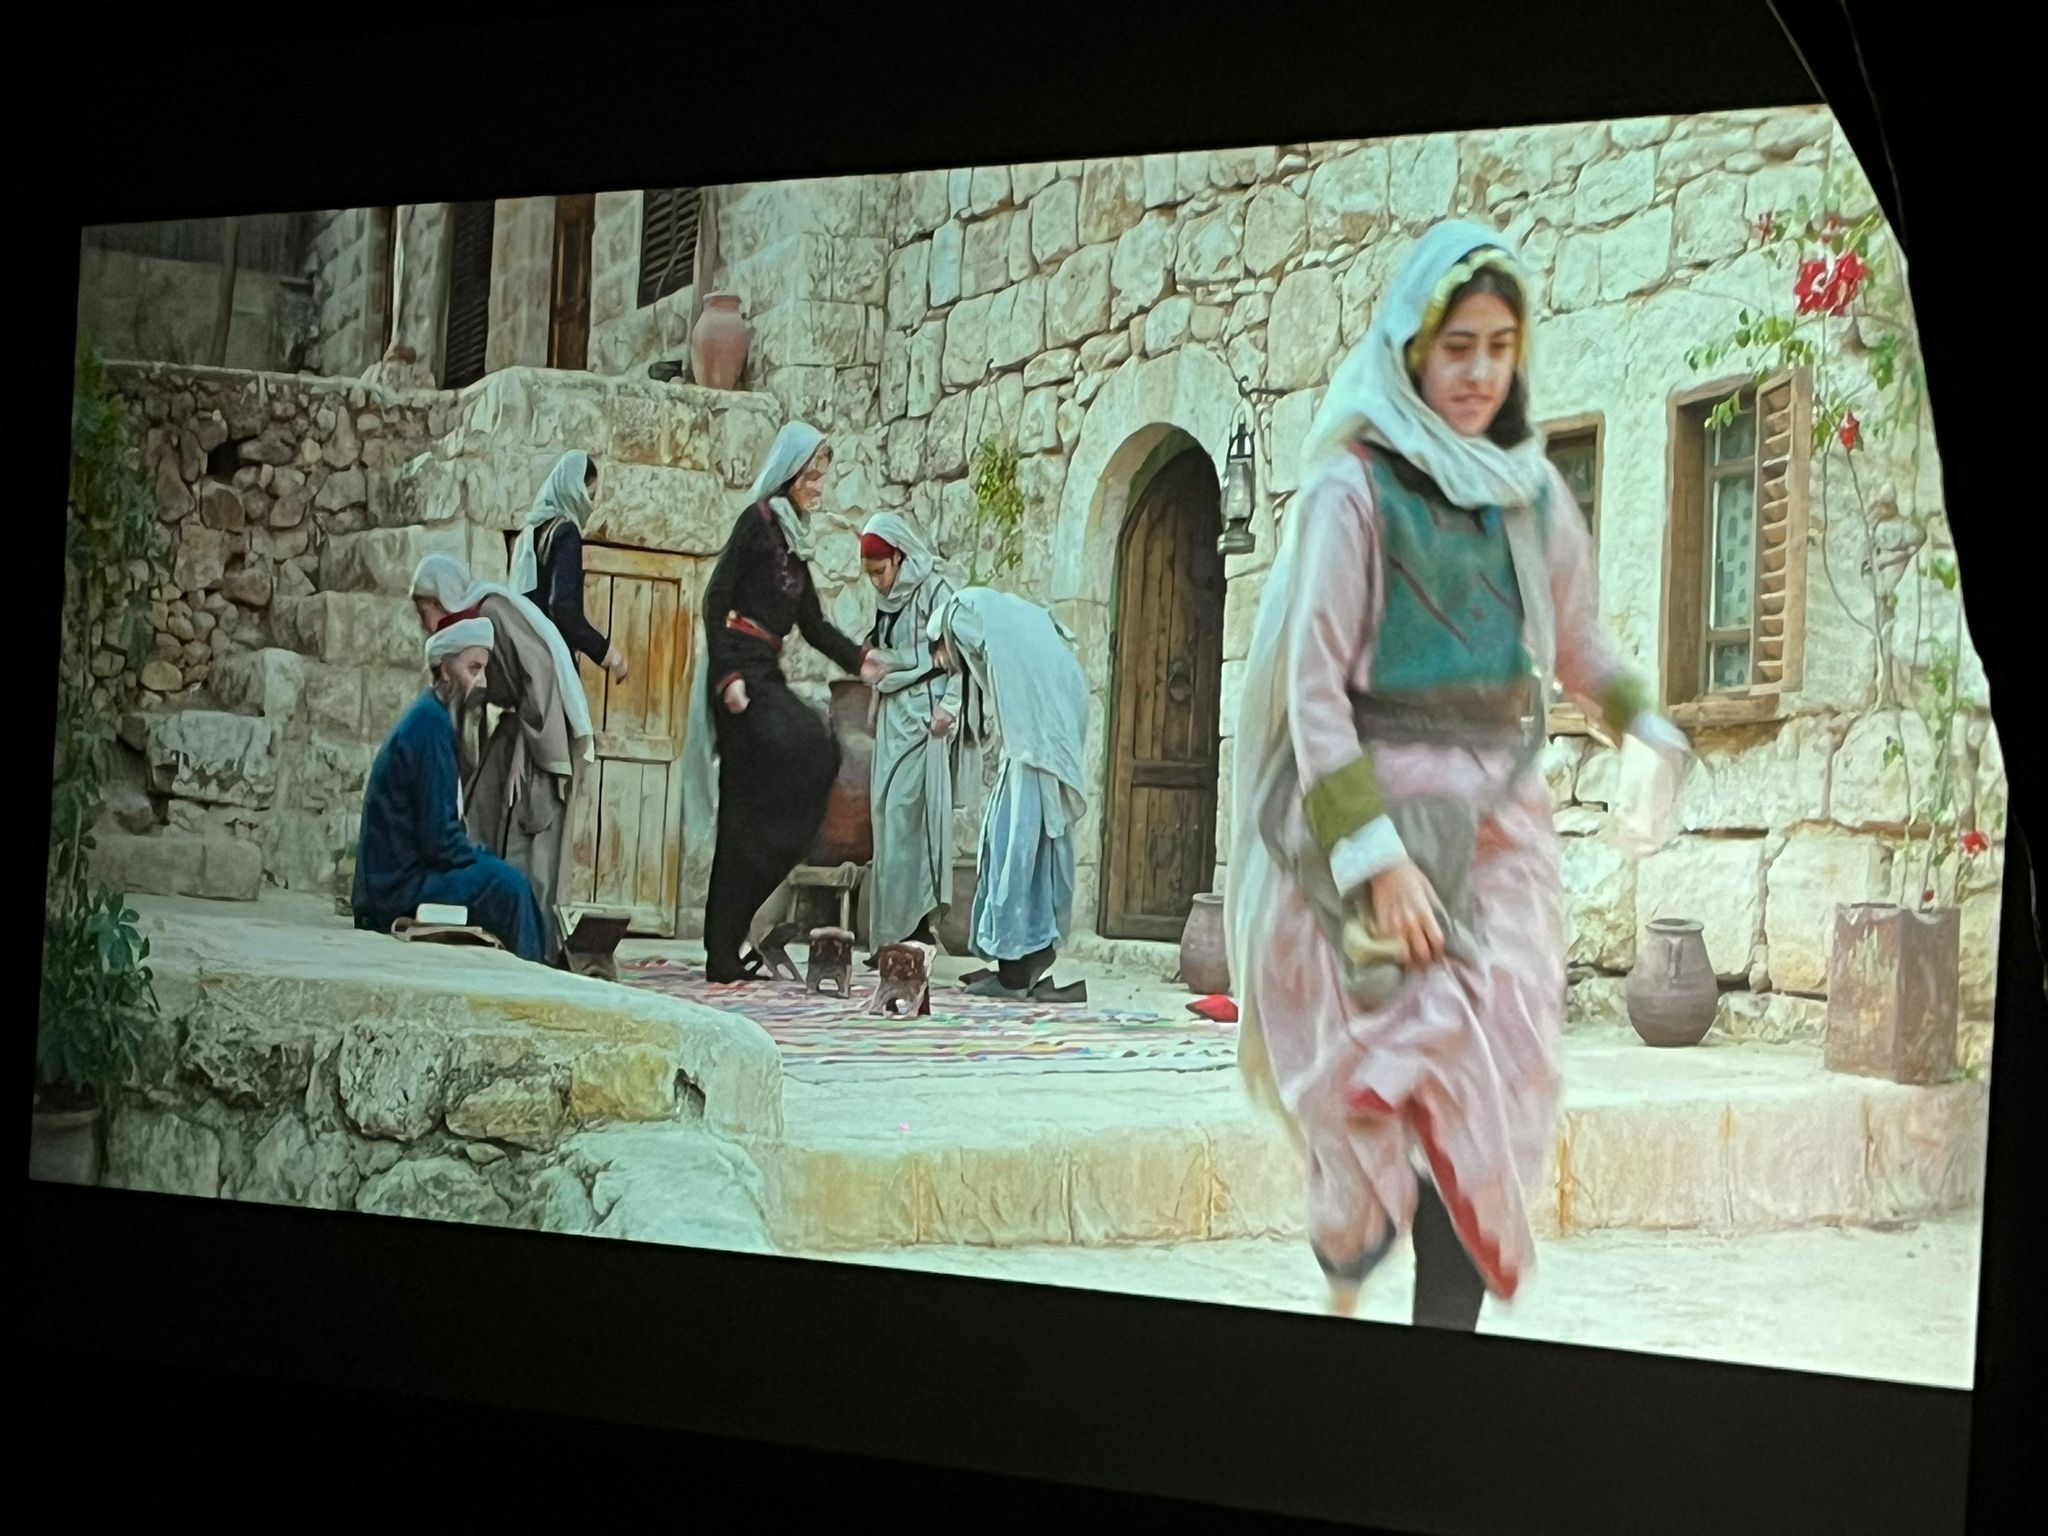 يافا: التفاف جماهيري حول السّرايا في عرض فيلم فرحة